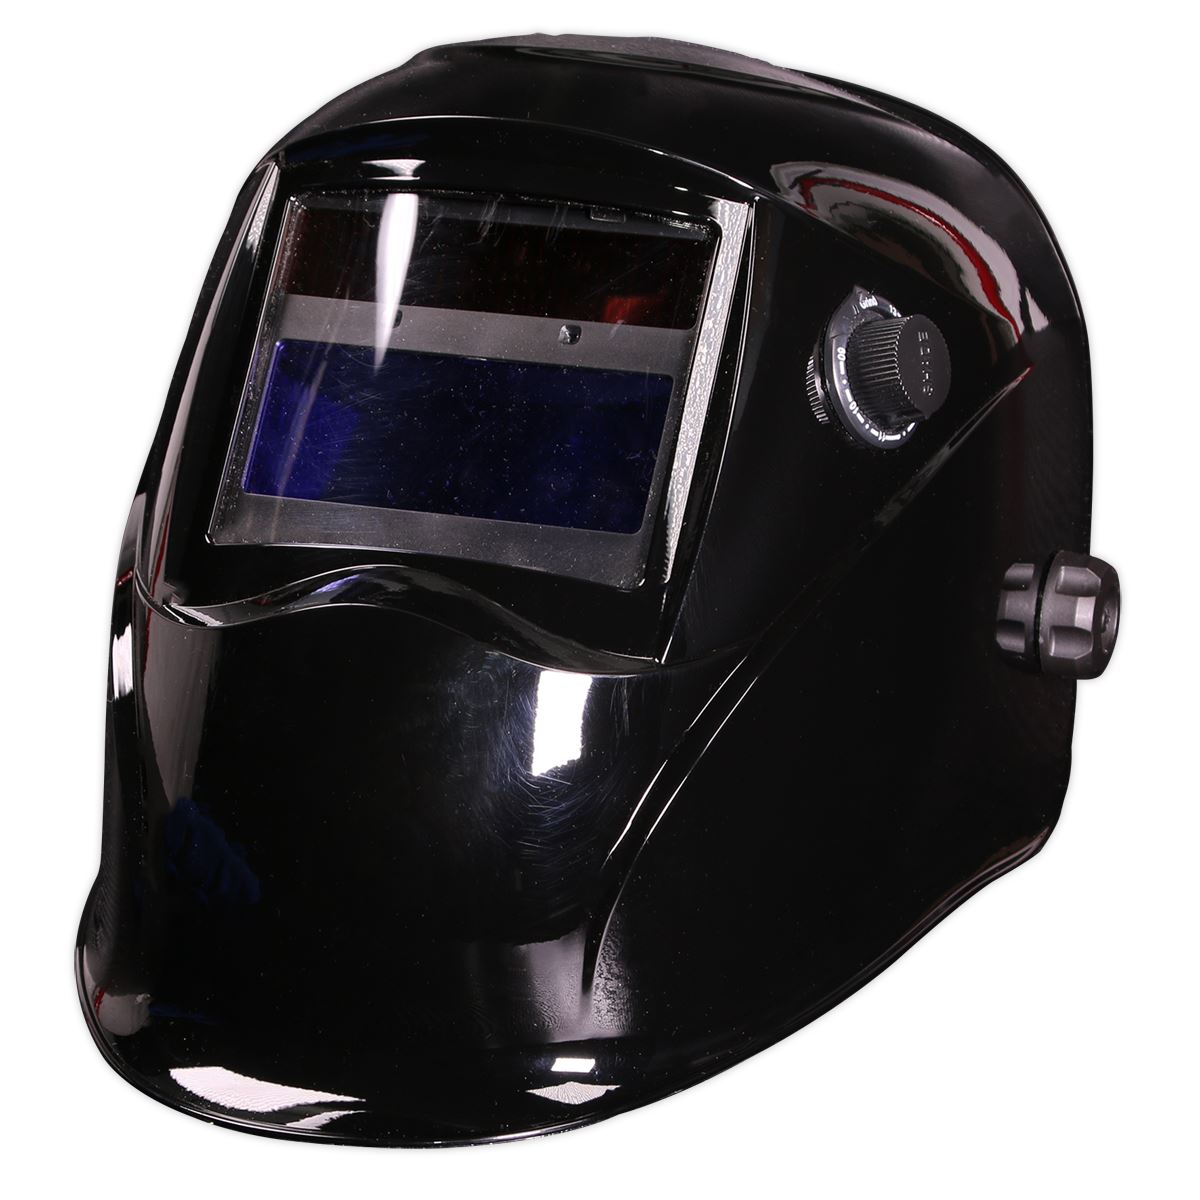 Sealey Welding Helmet Auto Darkening - Shade 9-13 - Black